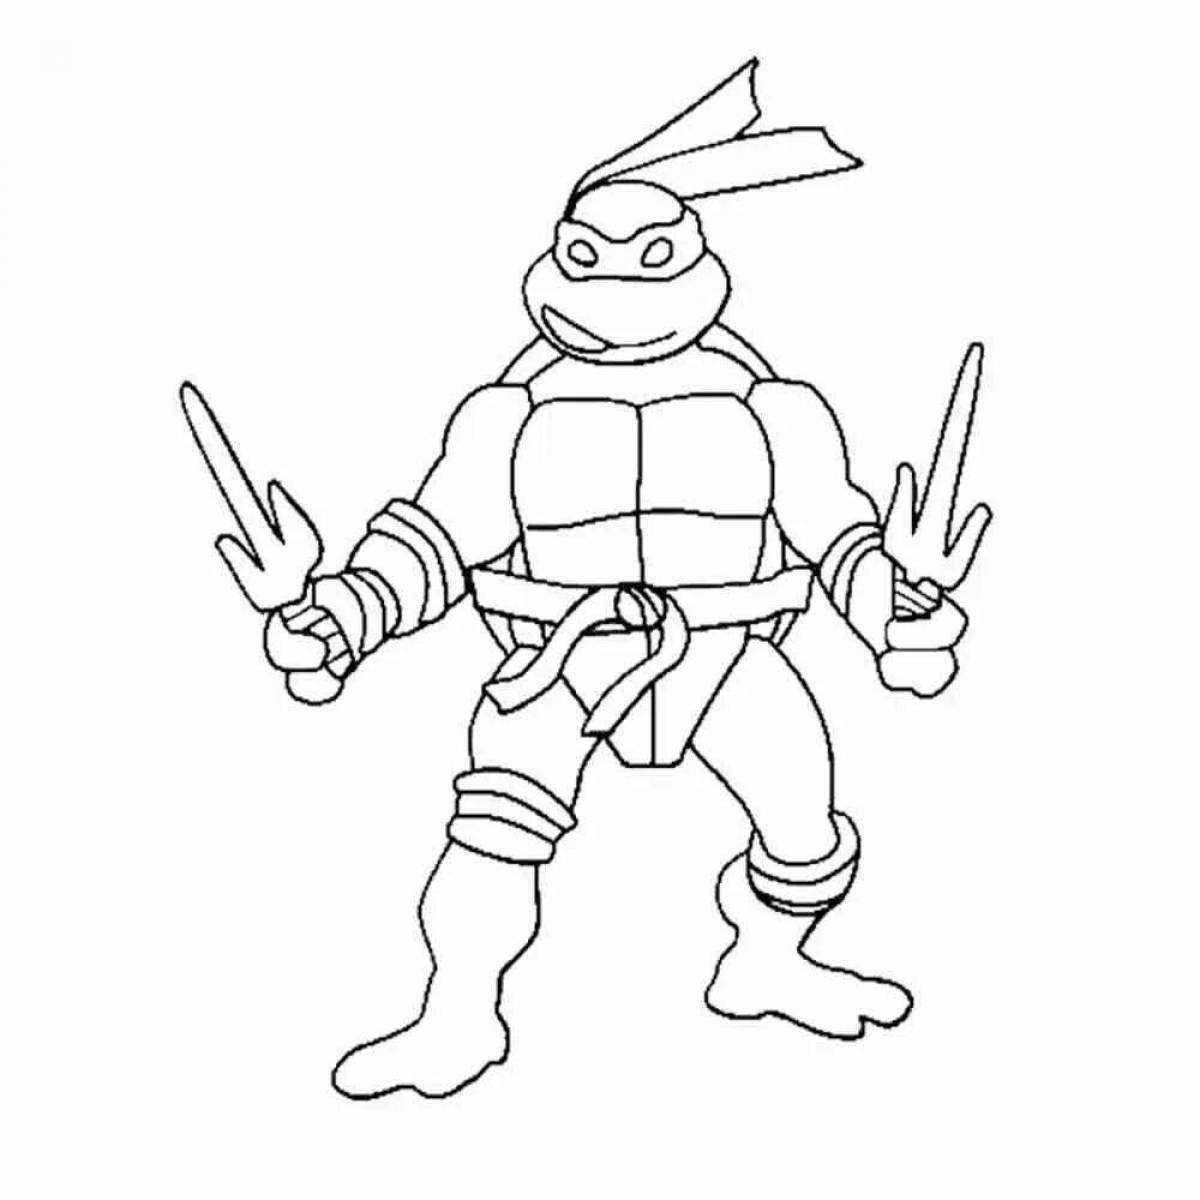 Raphael's sweet ninja turtles coloring book